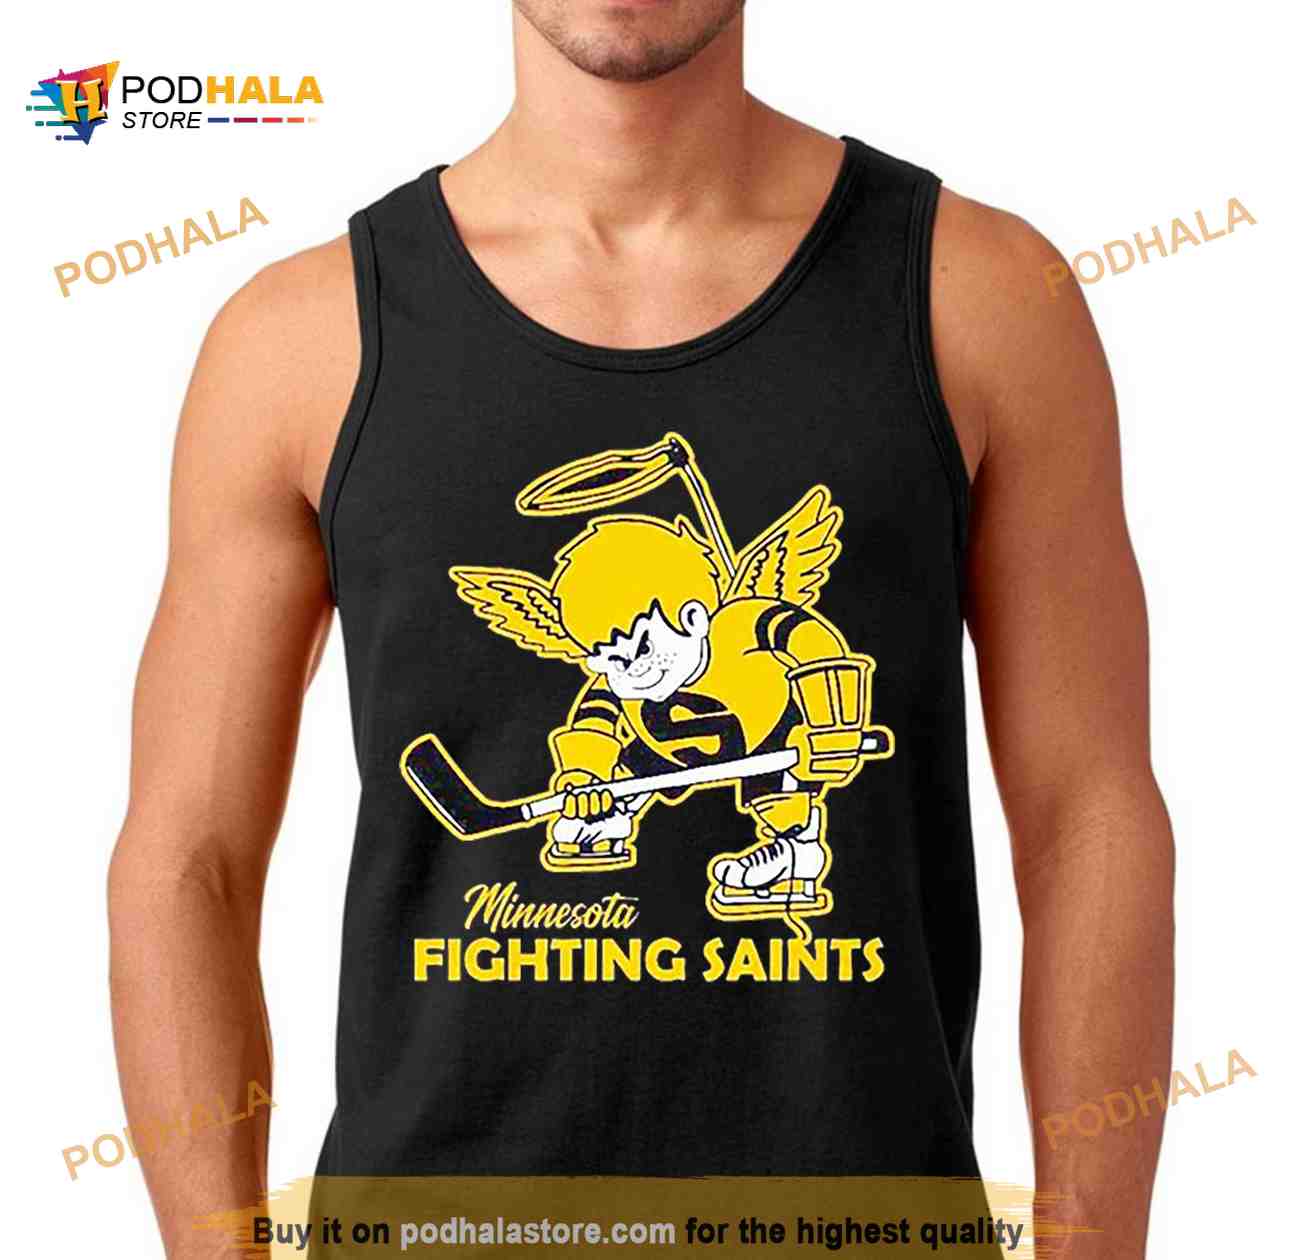 Minnesota Fighting Saints hockey mascot shirt, hoodie, sweater and v-neck  t-shirt